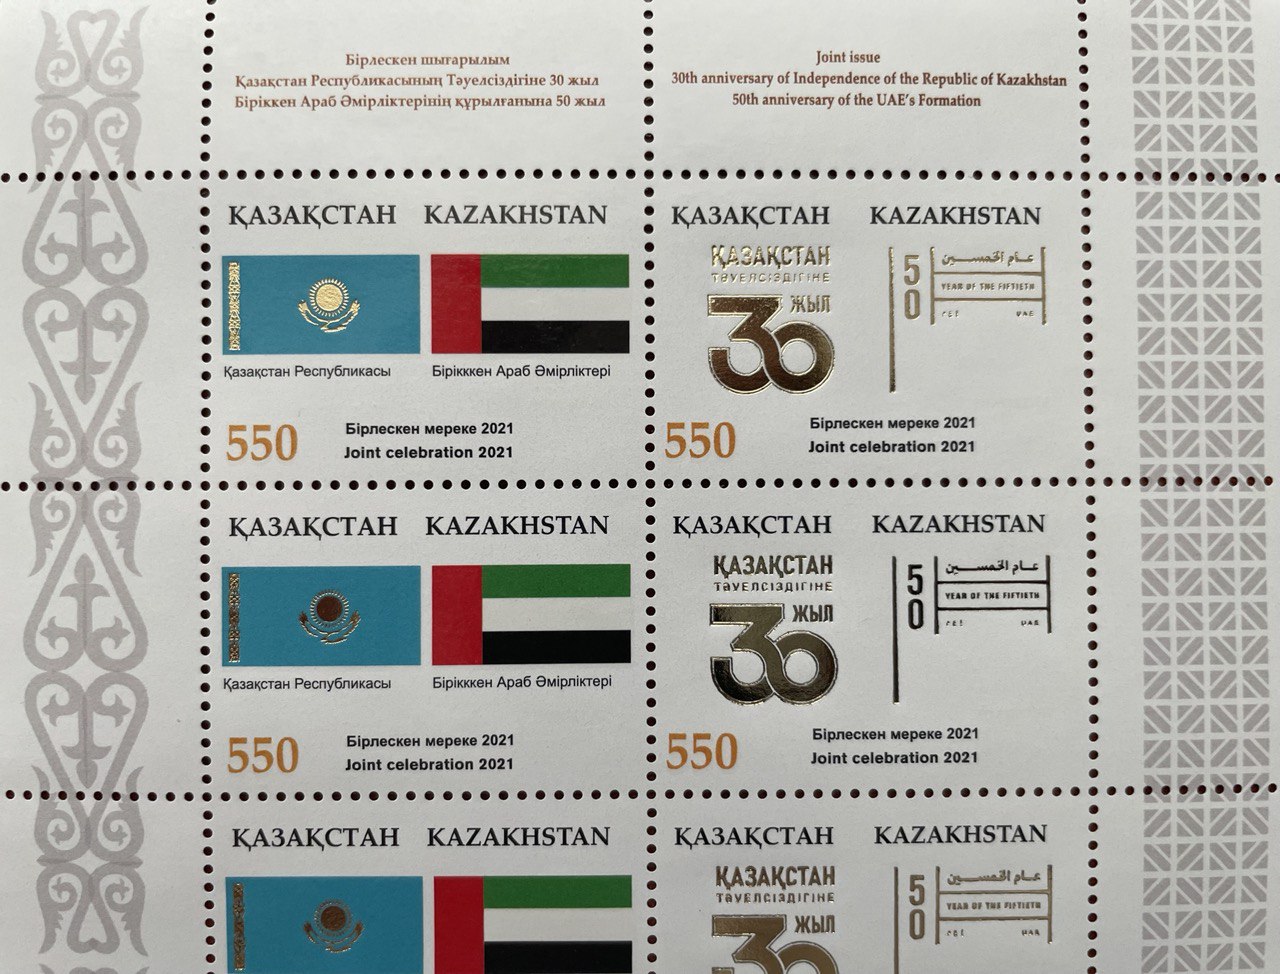 Казахстан и ОАЭ осуществили совместный выпуск почтовых марок к юбилейным датам независимости двух государств